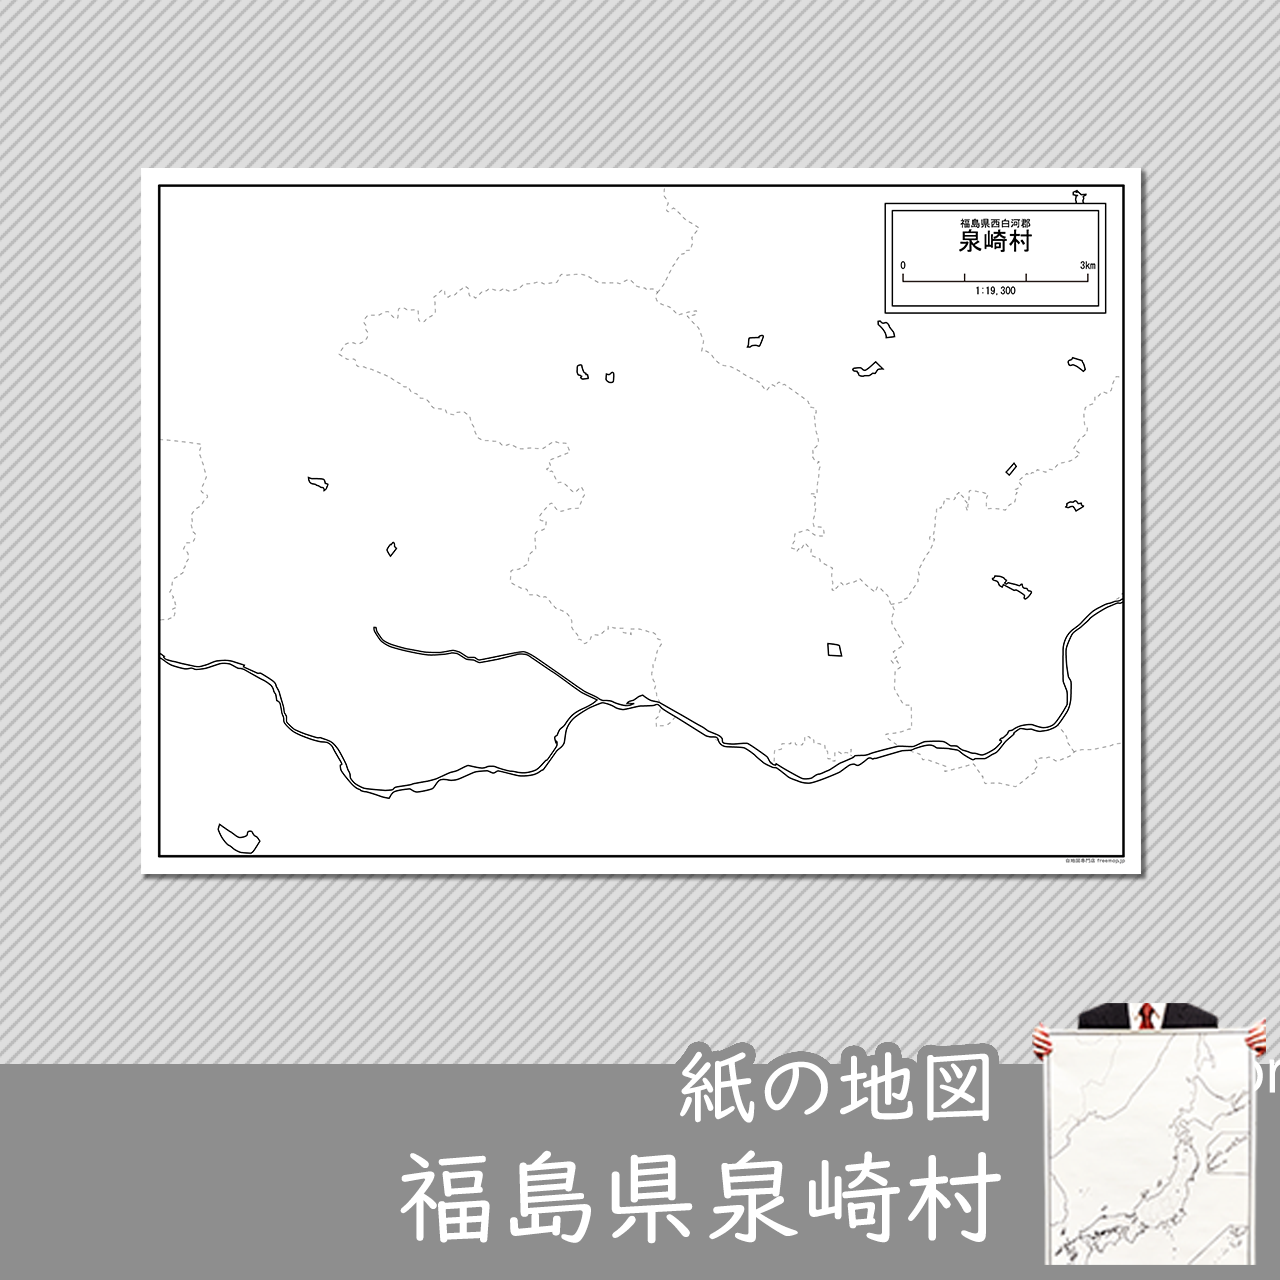 泉崎村の紙の白地図のサムネイル